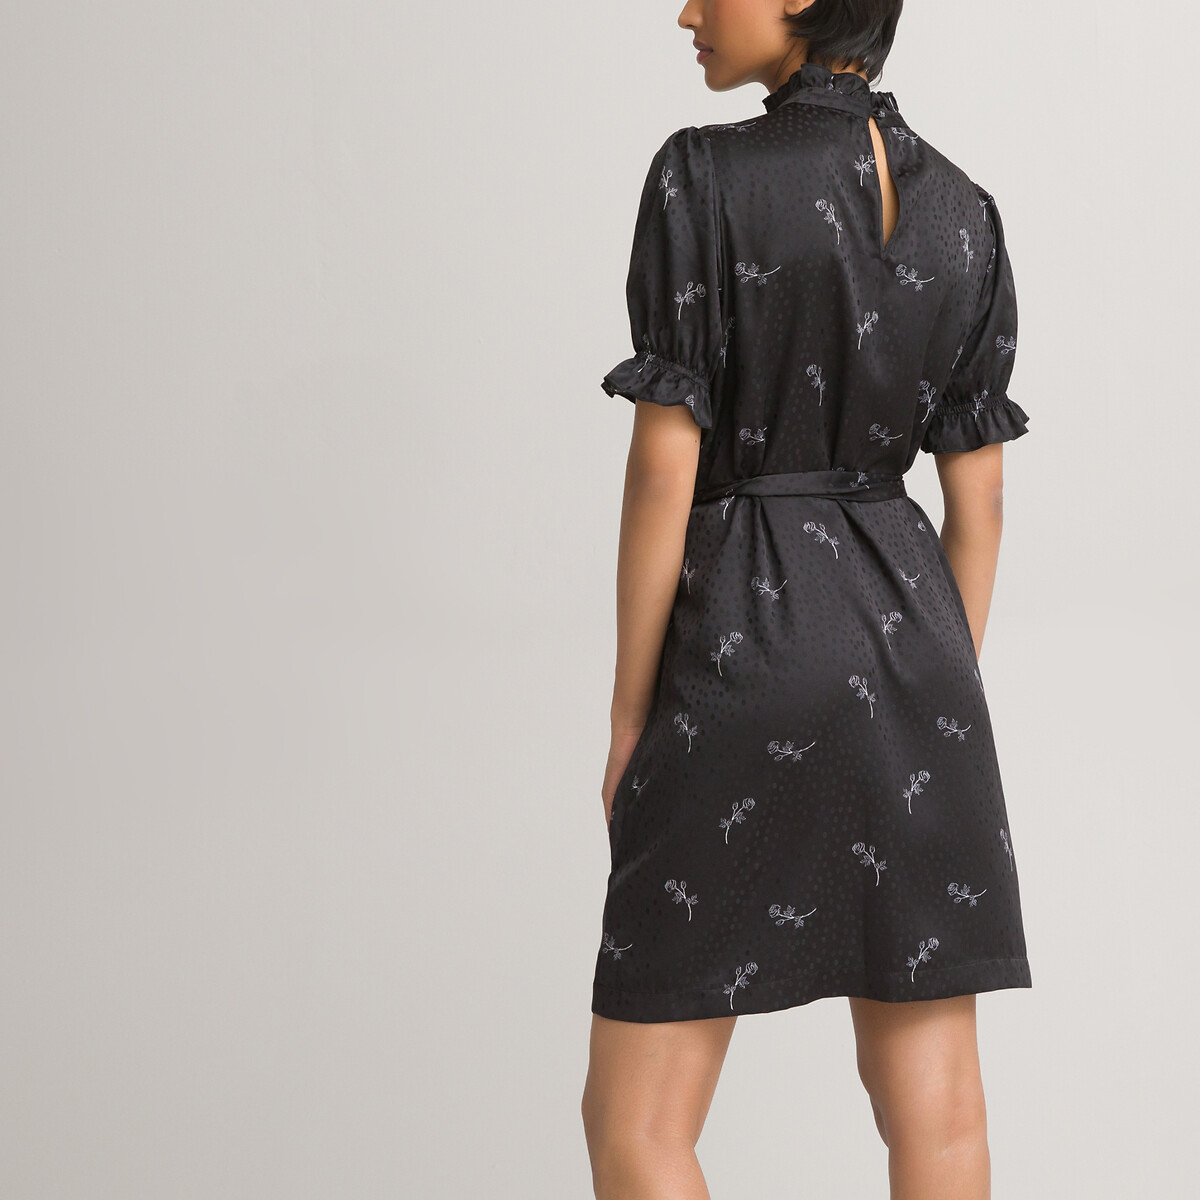 Платье LaRedoute С воротником-стойкой короткие рукава из сатина с принтом 42 черный, размер 42 - фото 4